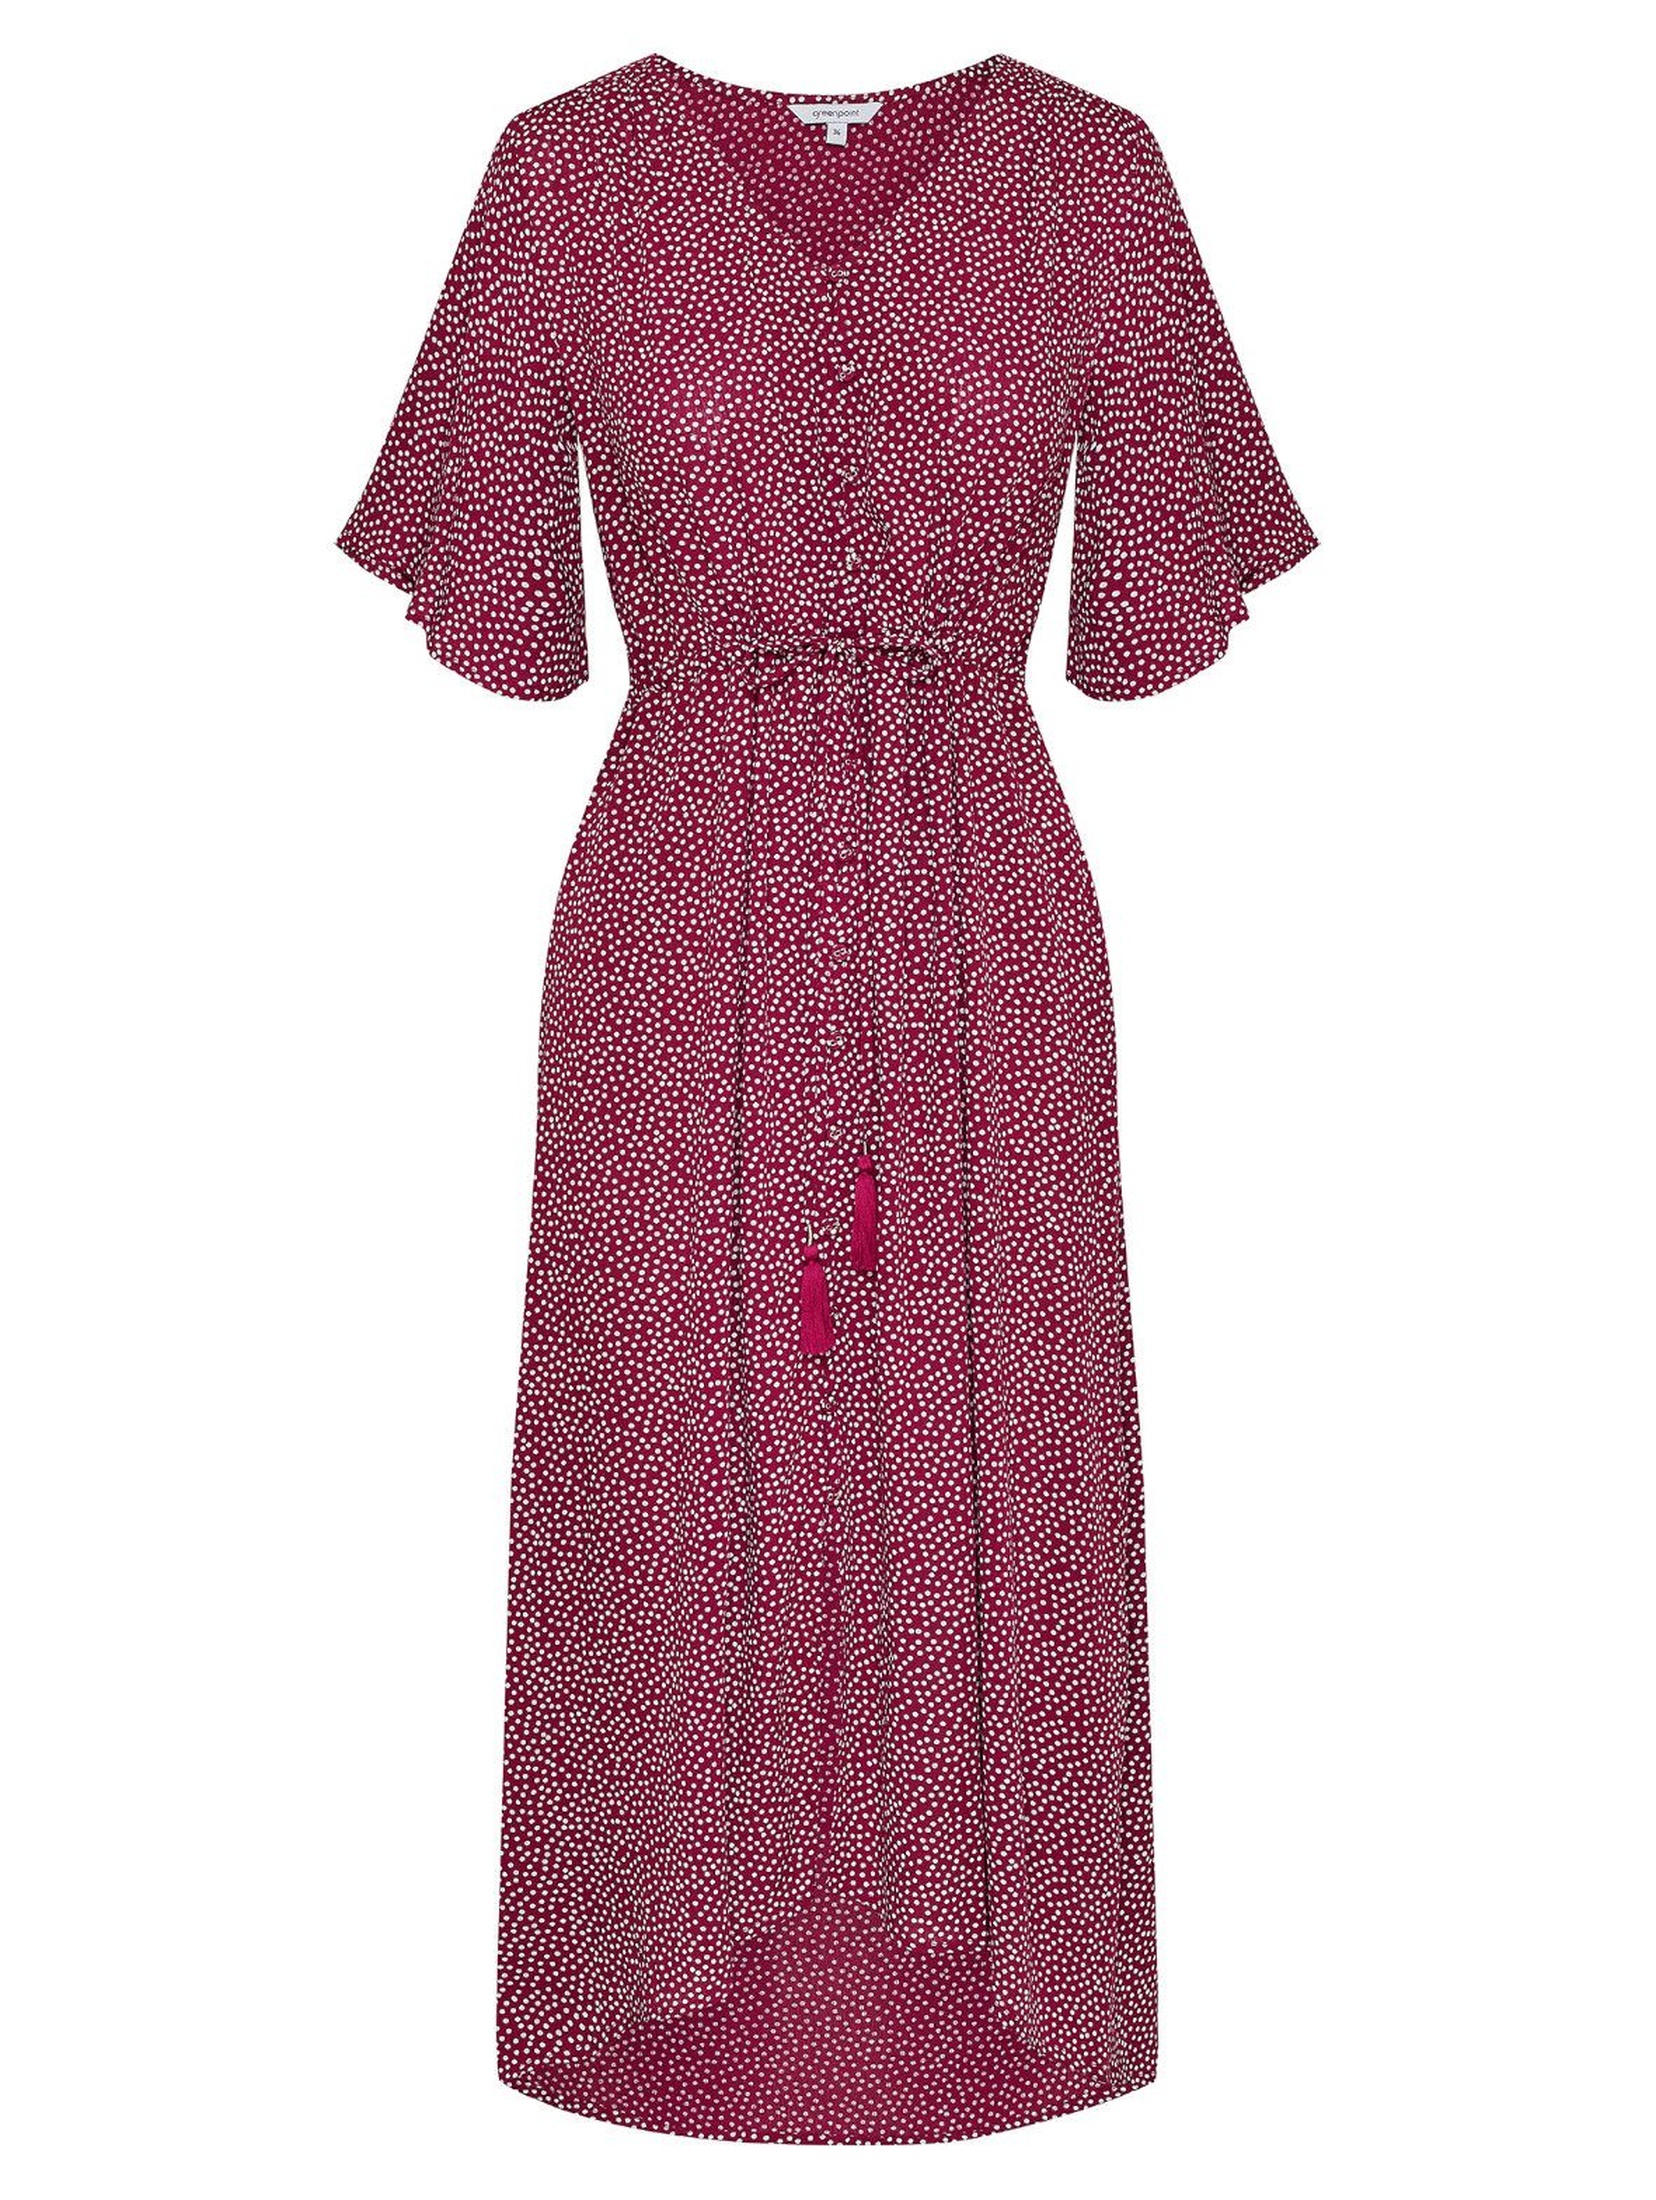 Wiskozowa fioletowa sukienka damska w groszki